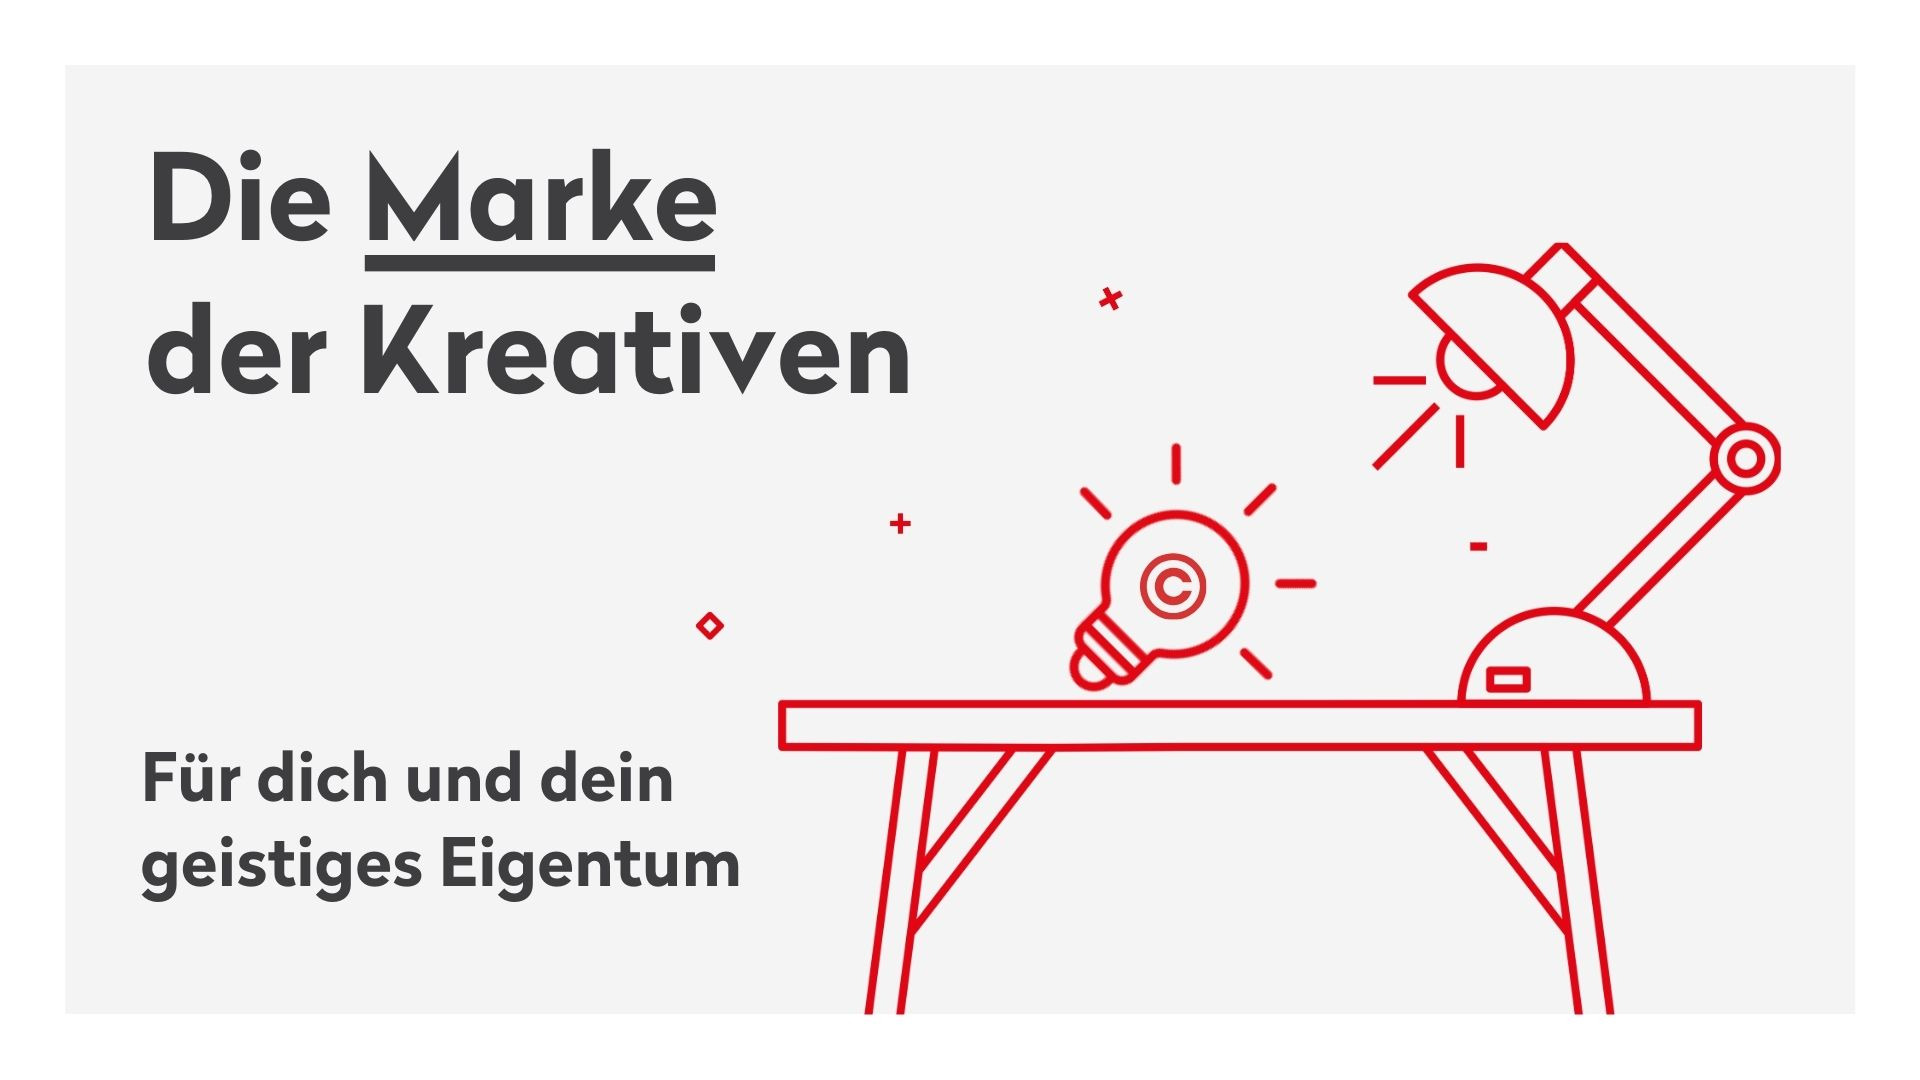 Coverfoto des Handbuches "Die Marke der Kreativen - Für dich und dein geistiges Eigentum" der Kreativwirtschaft Austria 